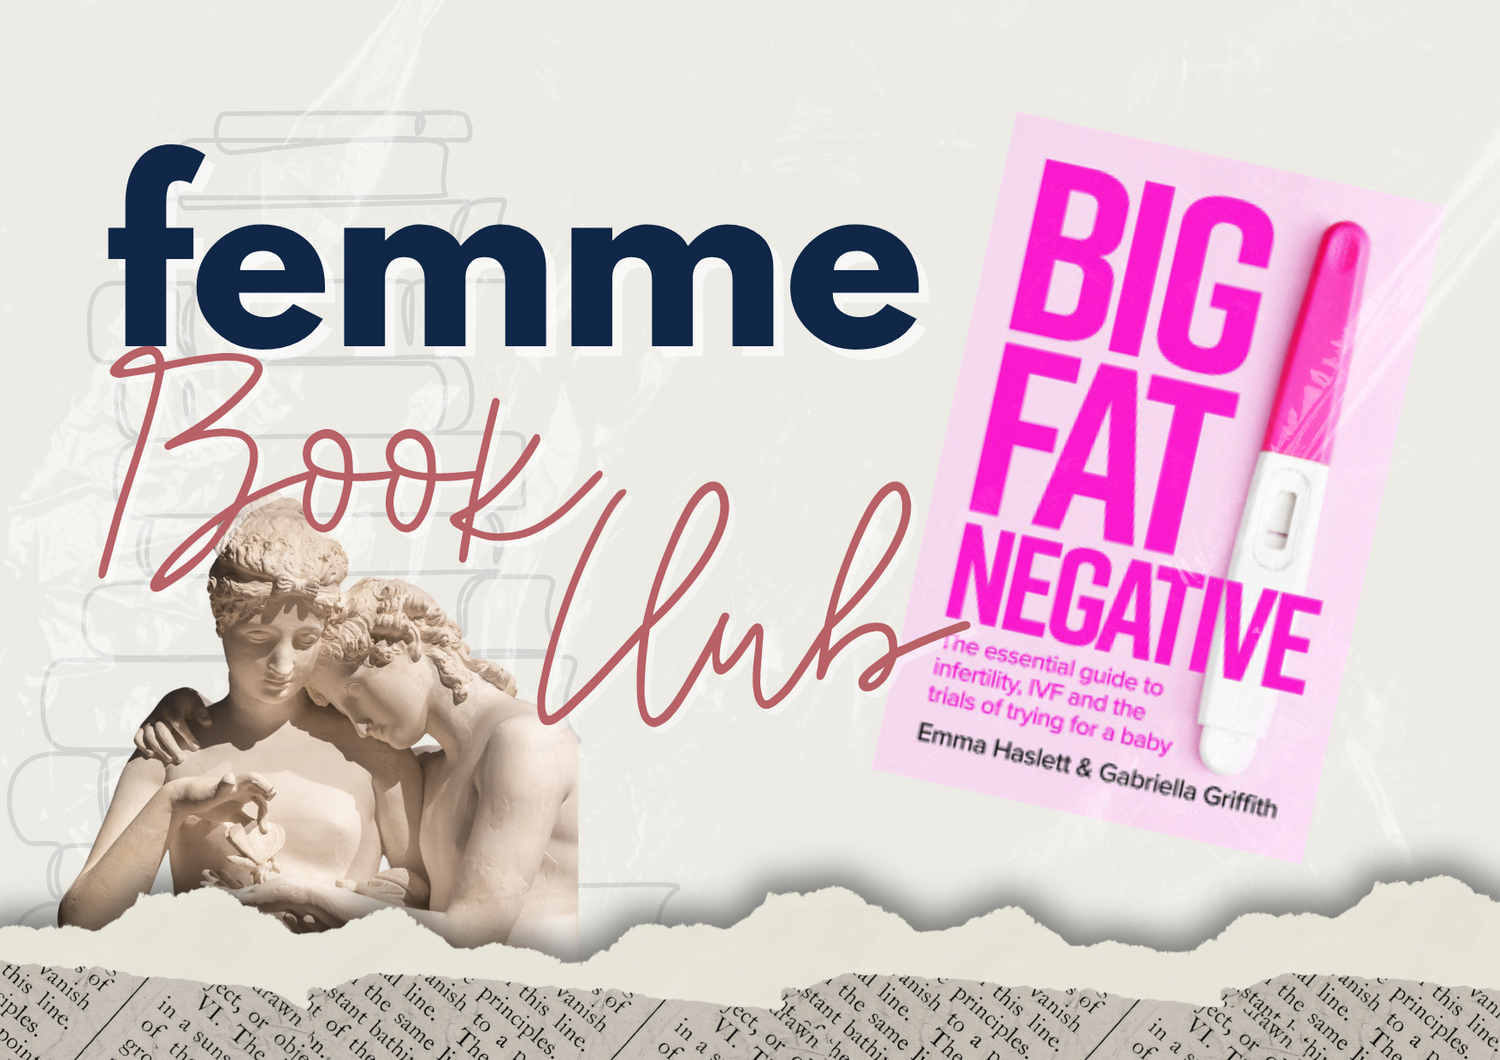 BIG FAT NEGATIVE by Emma Haslett and Gabriella Griffth